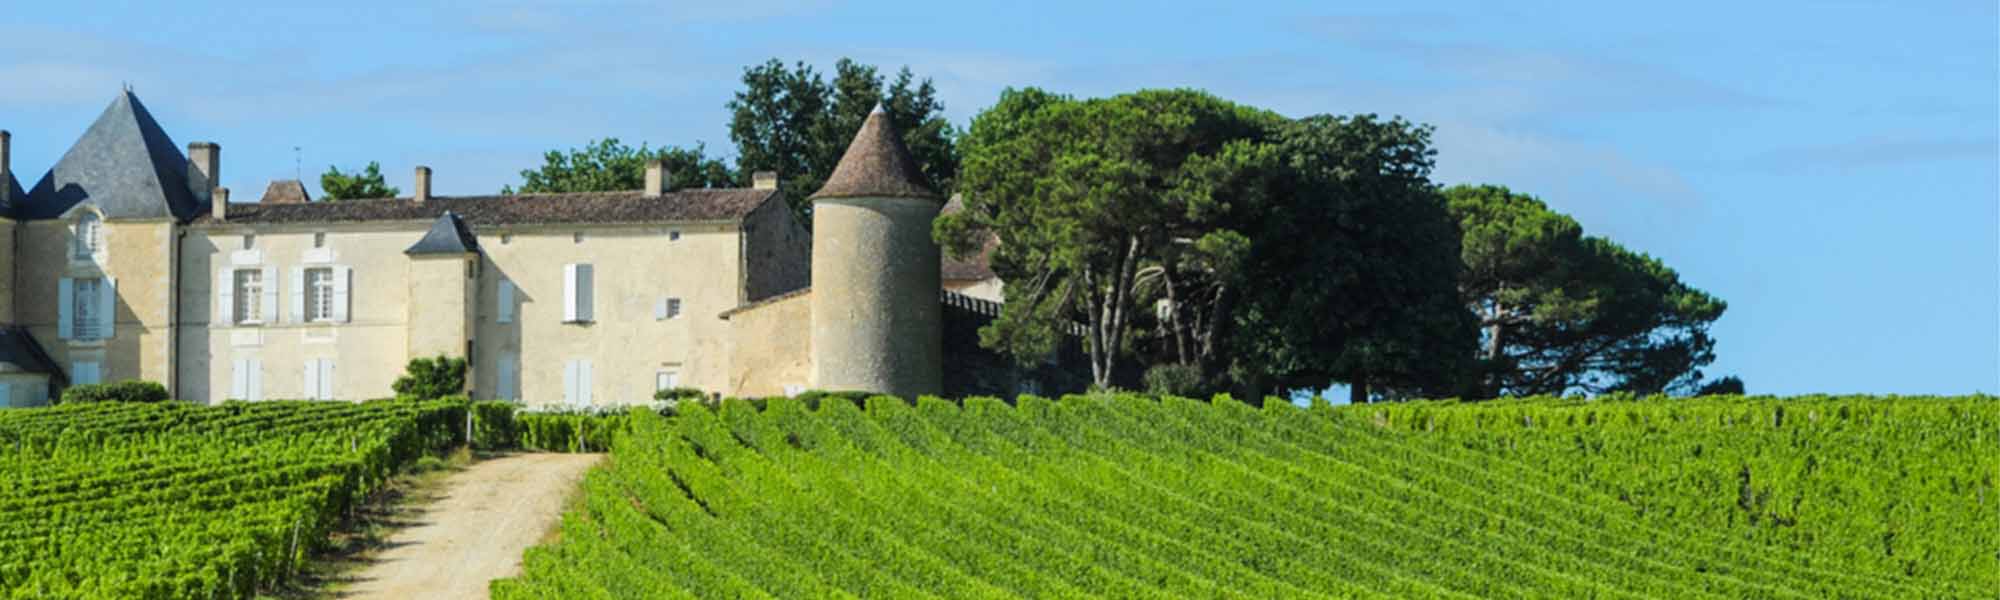 Bordeaux 2021 Report